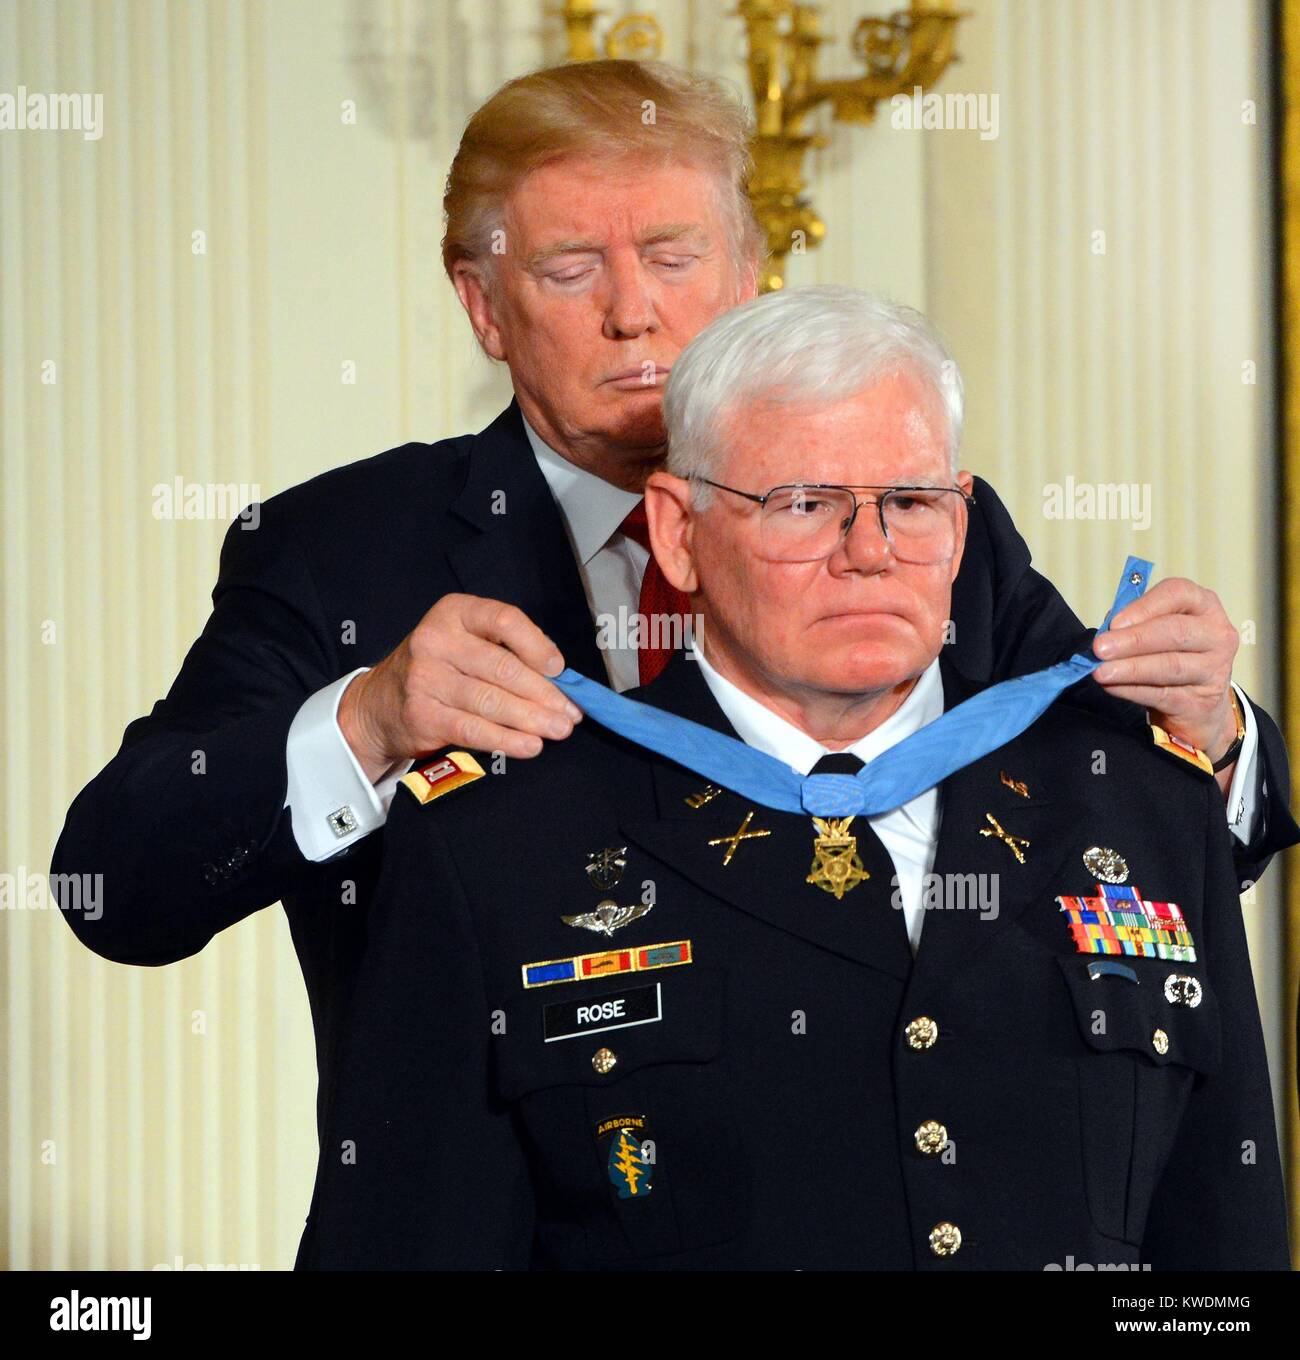 Armee Kapitän Mike Rose erhält die Ehrenmedaille der Präsident Donald Trump, Okt. 23, 2017. Er wurde für seine Heldentaten als Special Forces Sanitäter, während des Vietnamkriegs, Sept. 11-14, 1970 (BSLOC 2017 18 148 verliehen) Stockfoto